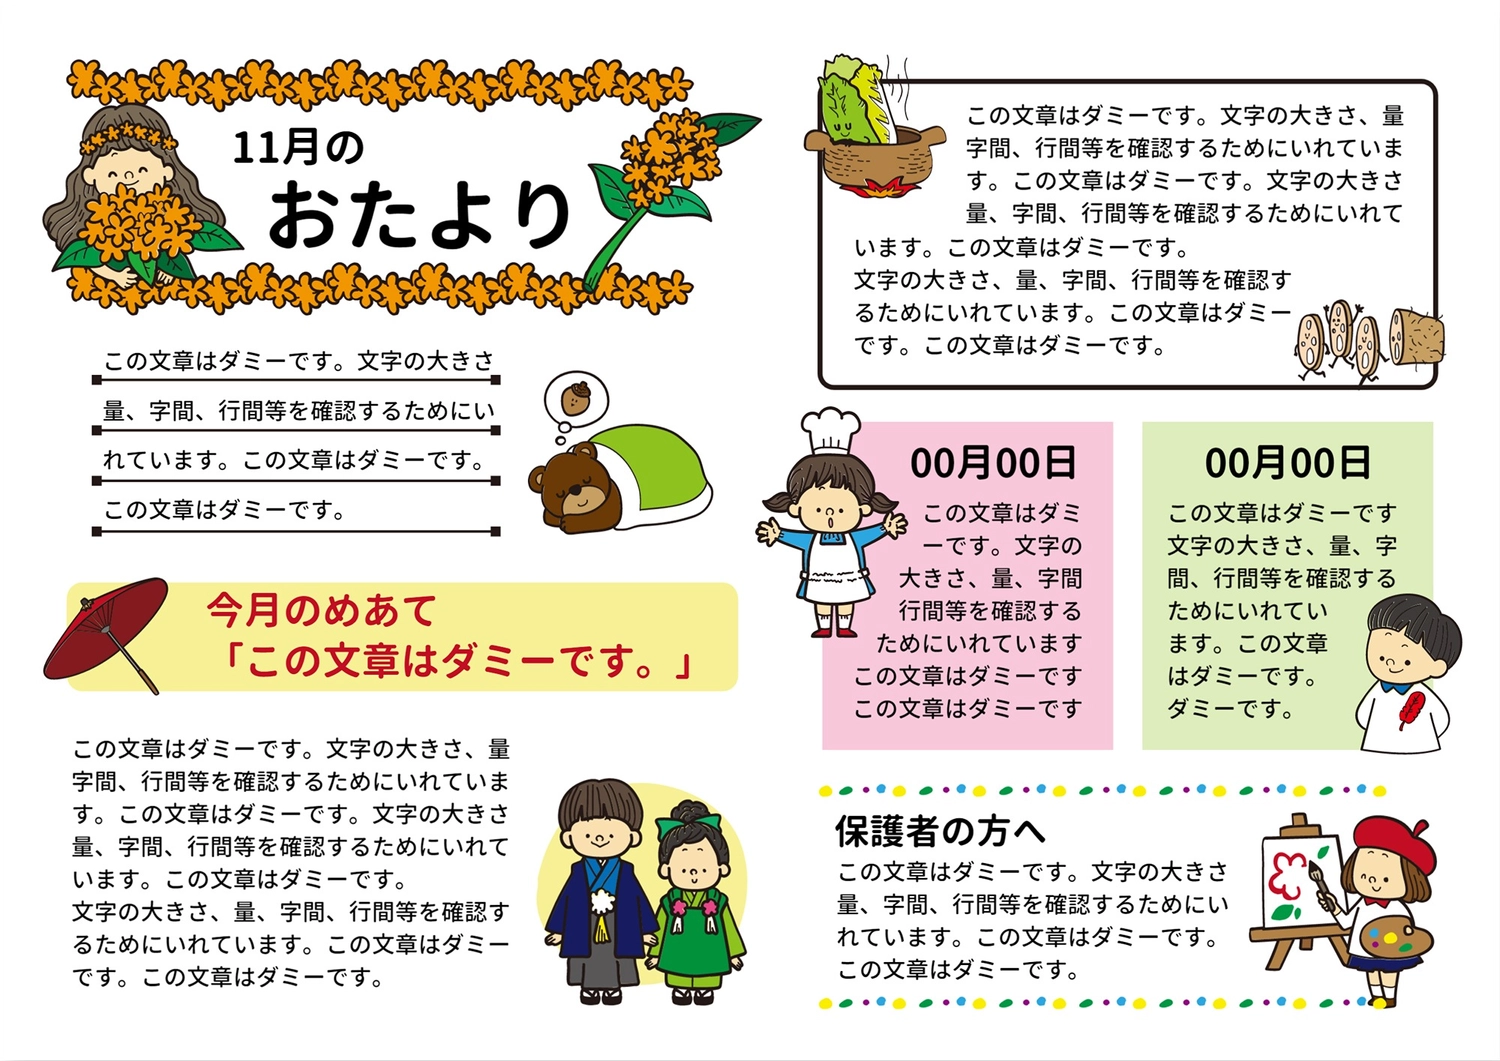 １１月のおたより　花と女の子, Shichigosan, vegetable, painting, News template